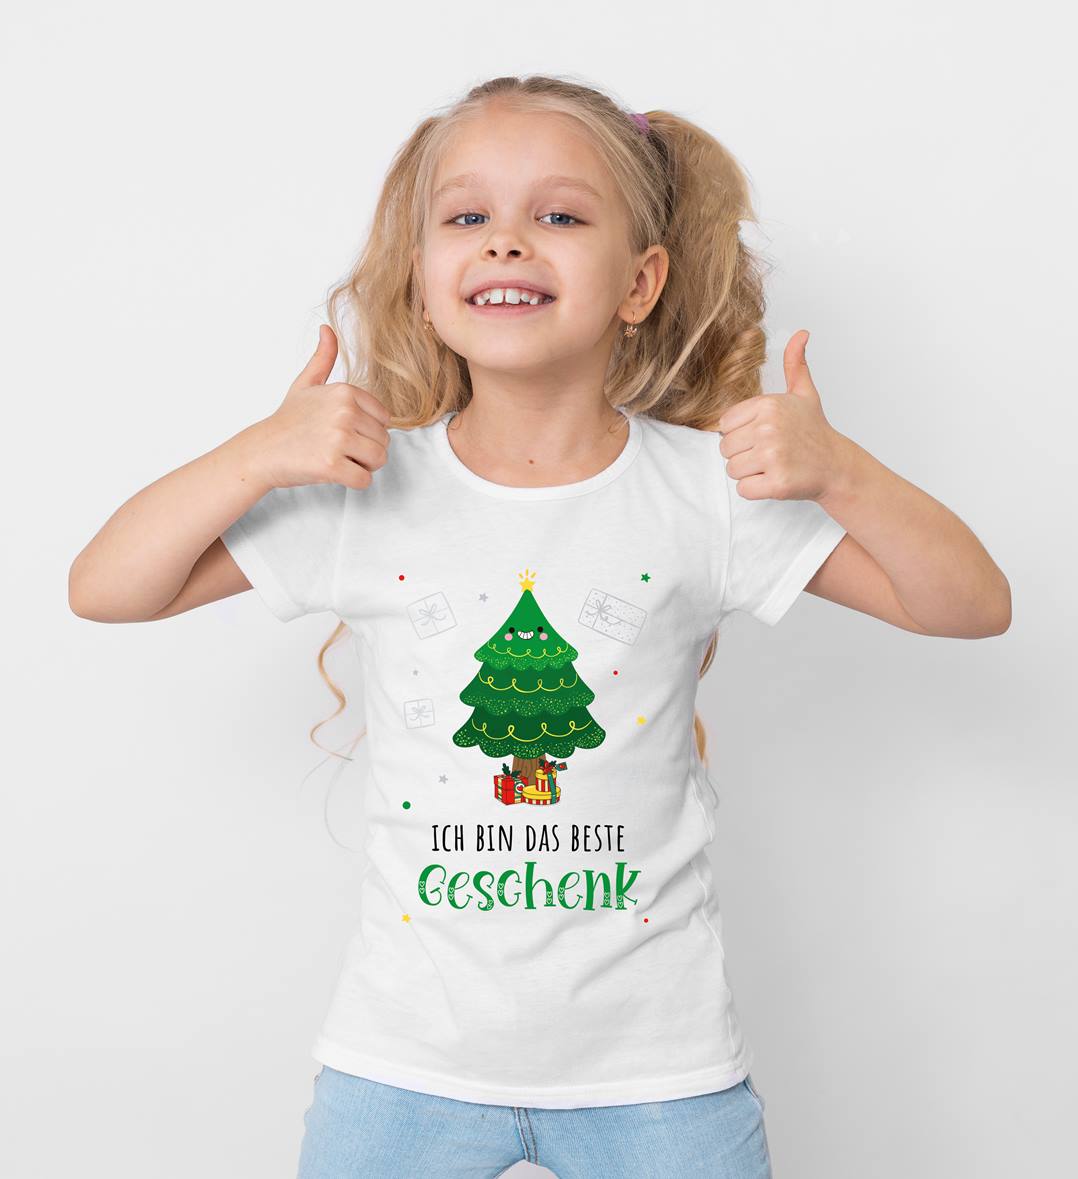 Bild: T-Shirt Kinder - Ich bin das beste Geschenk (Weihnachtsedition) Geschenkidee